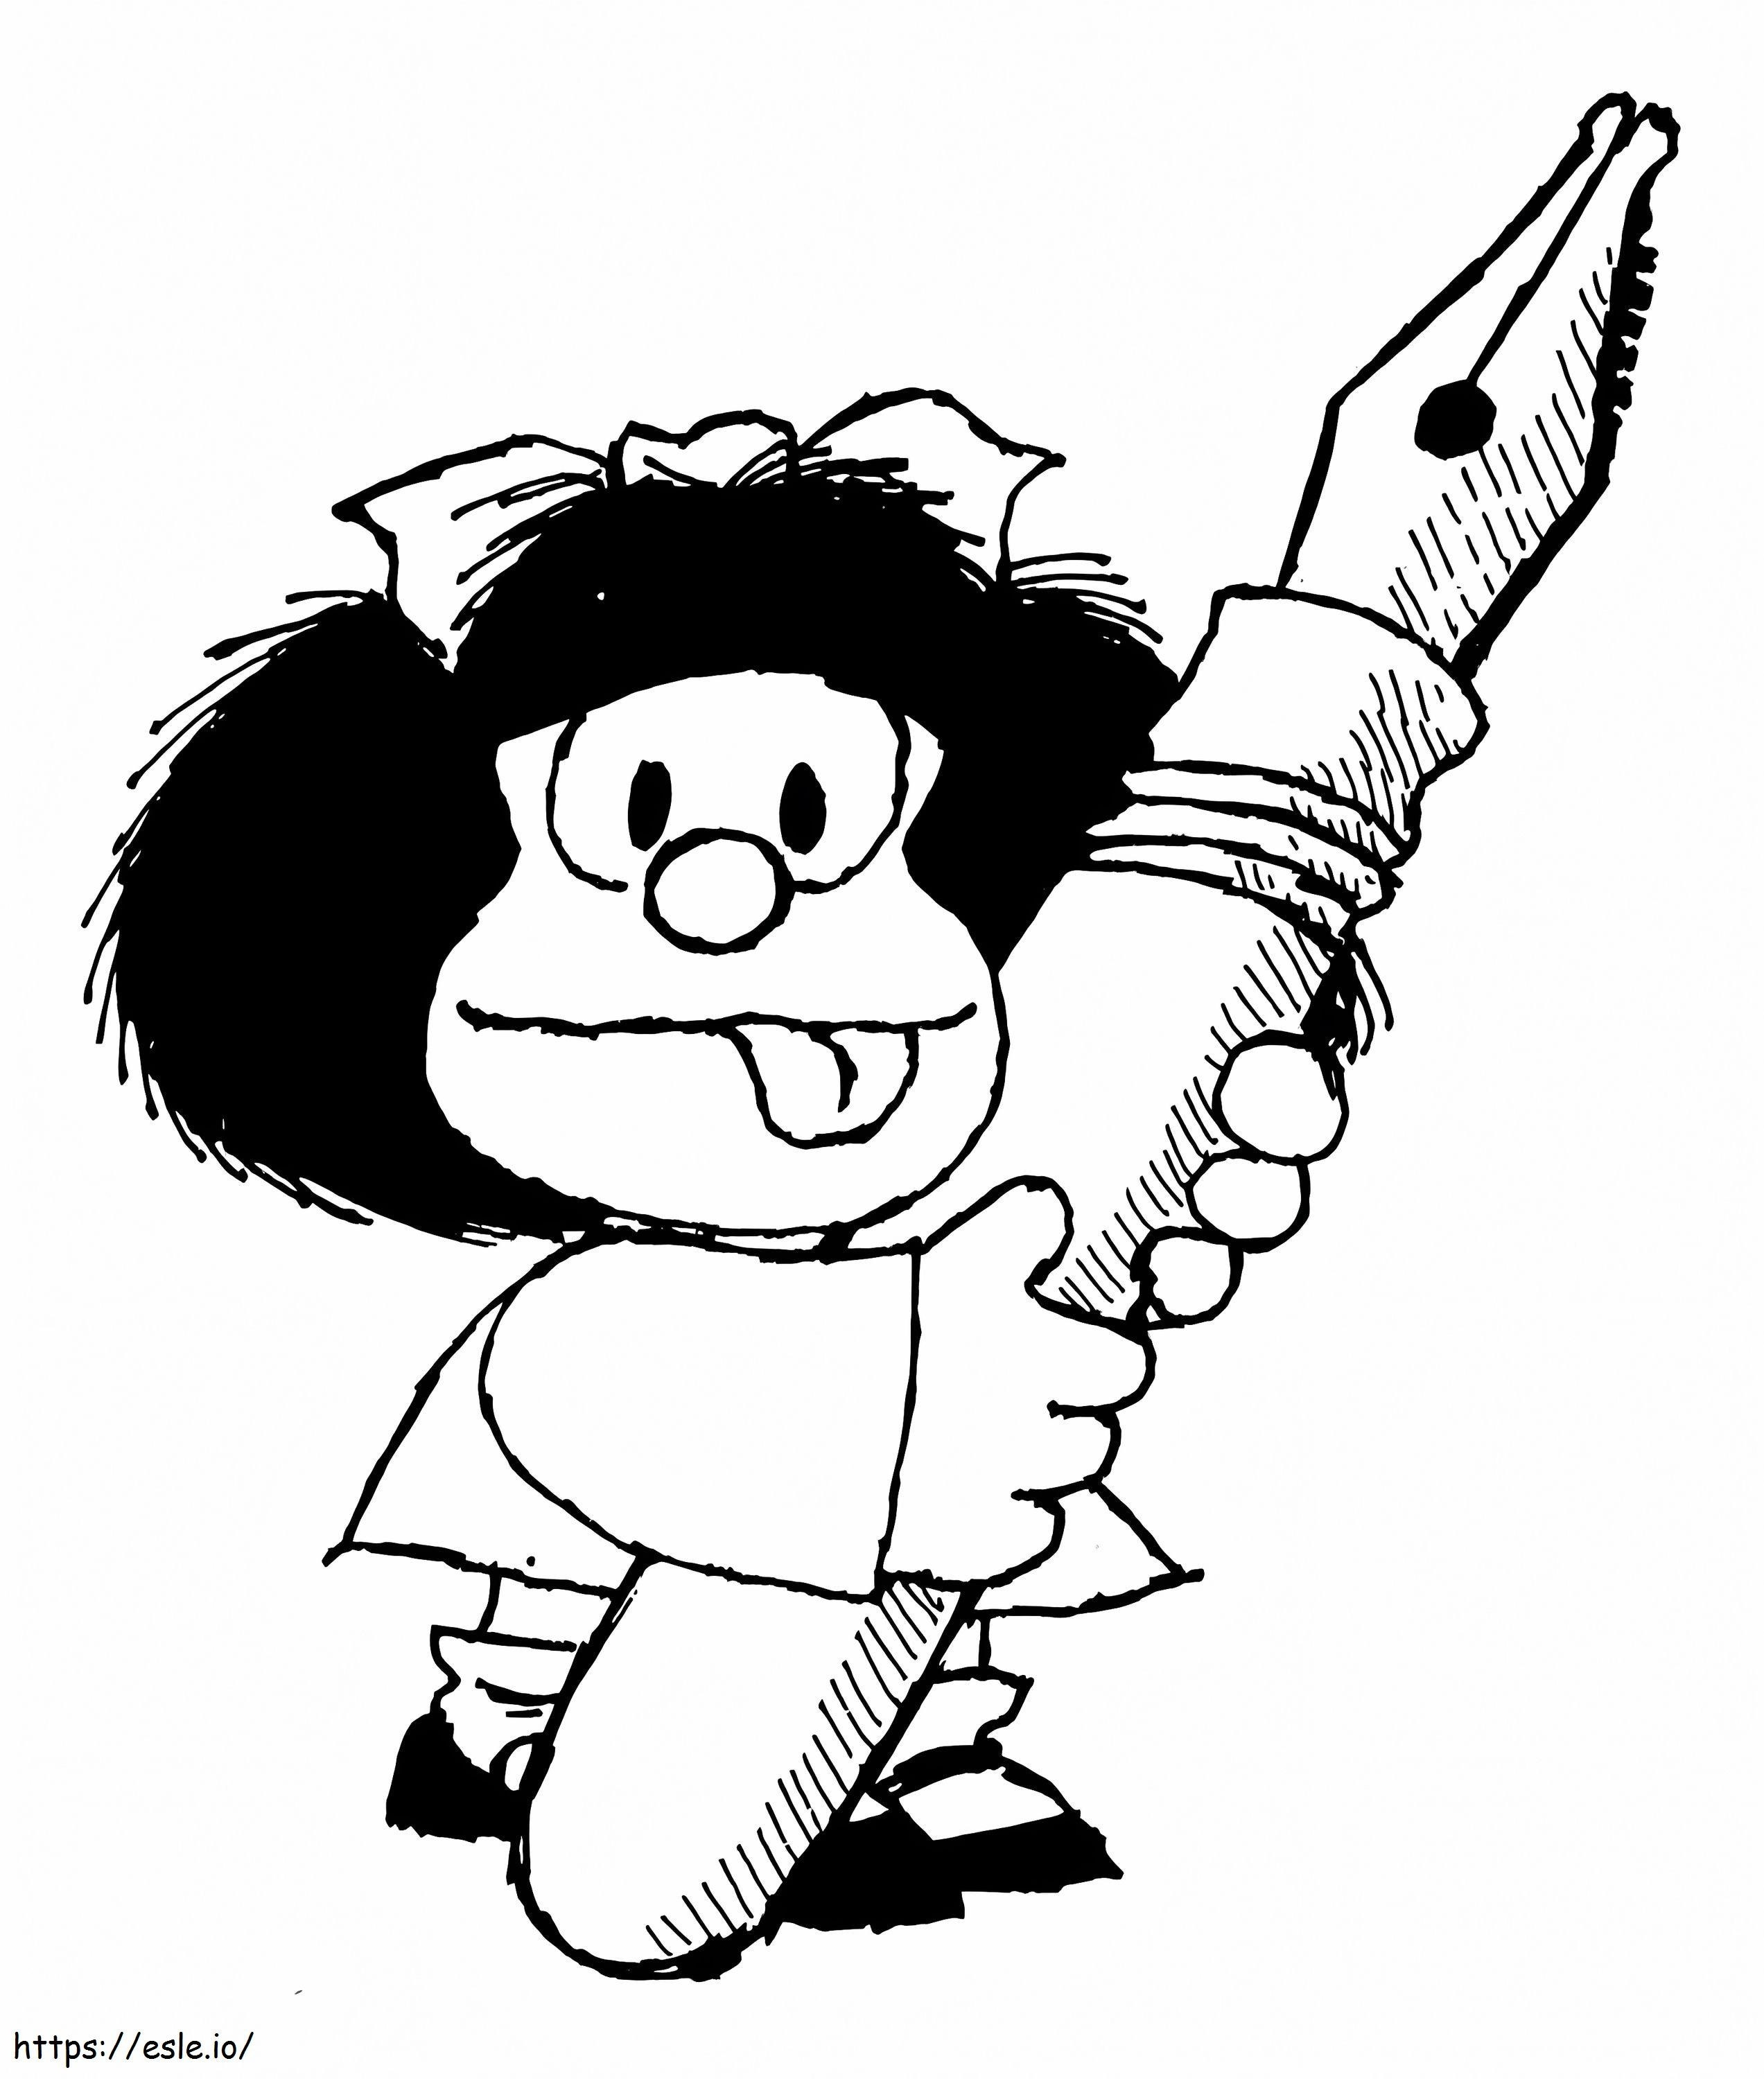 Kalemli Mafalda boyama